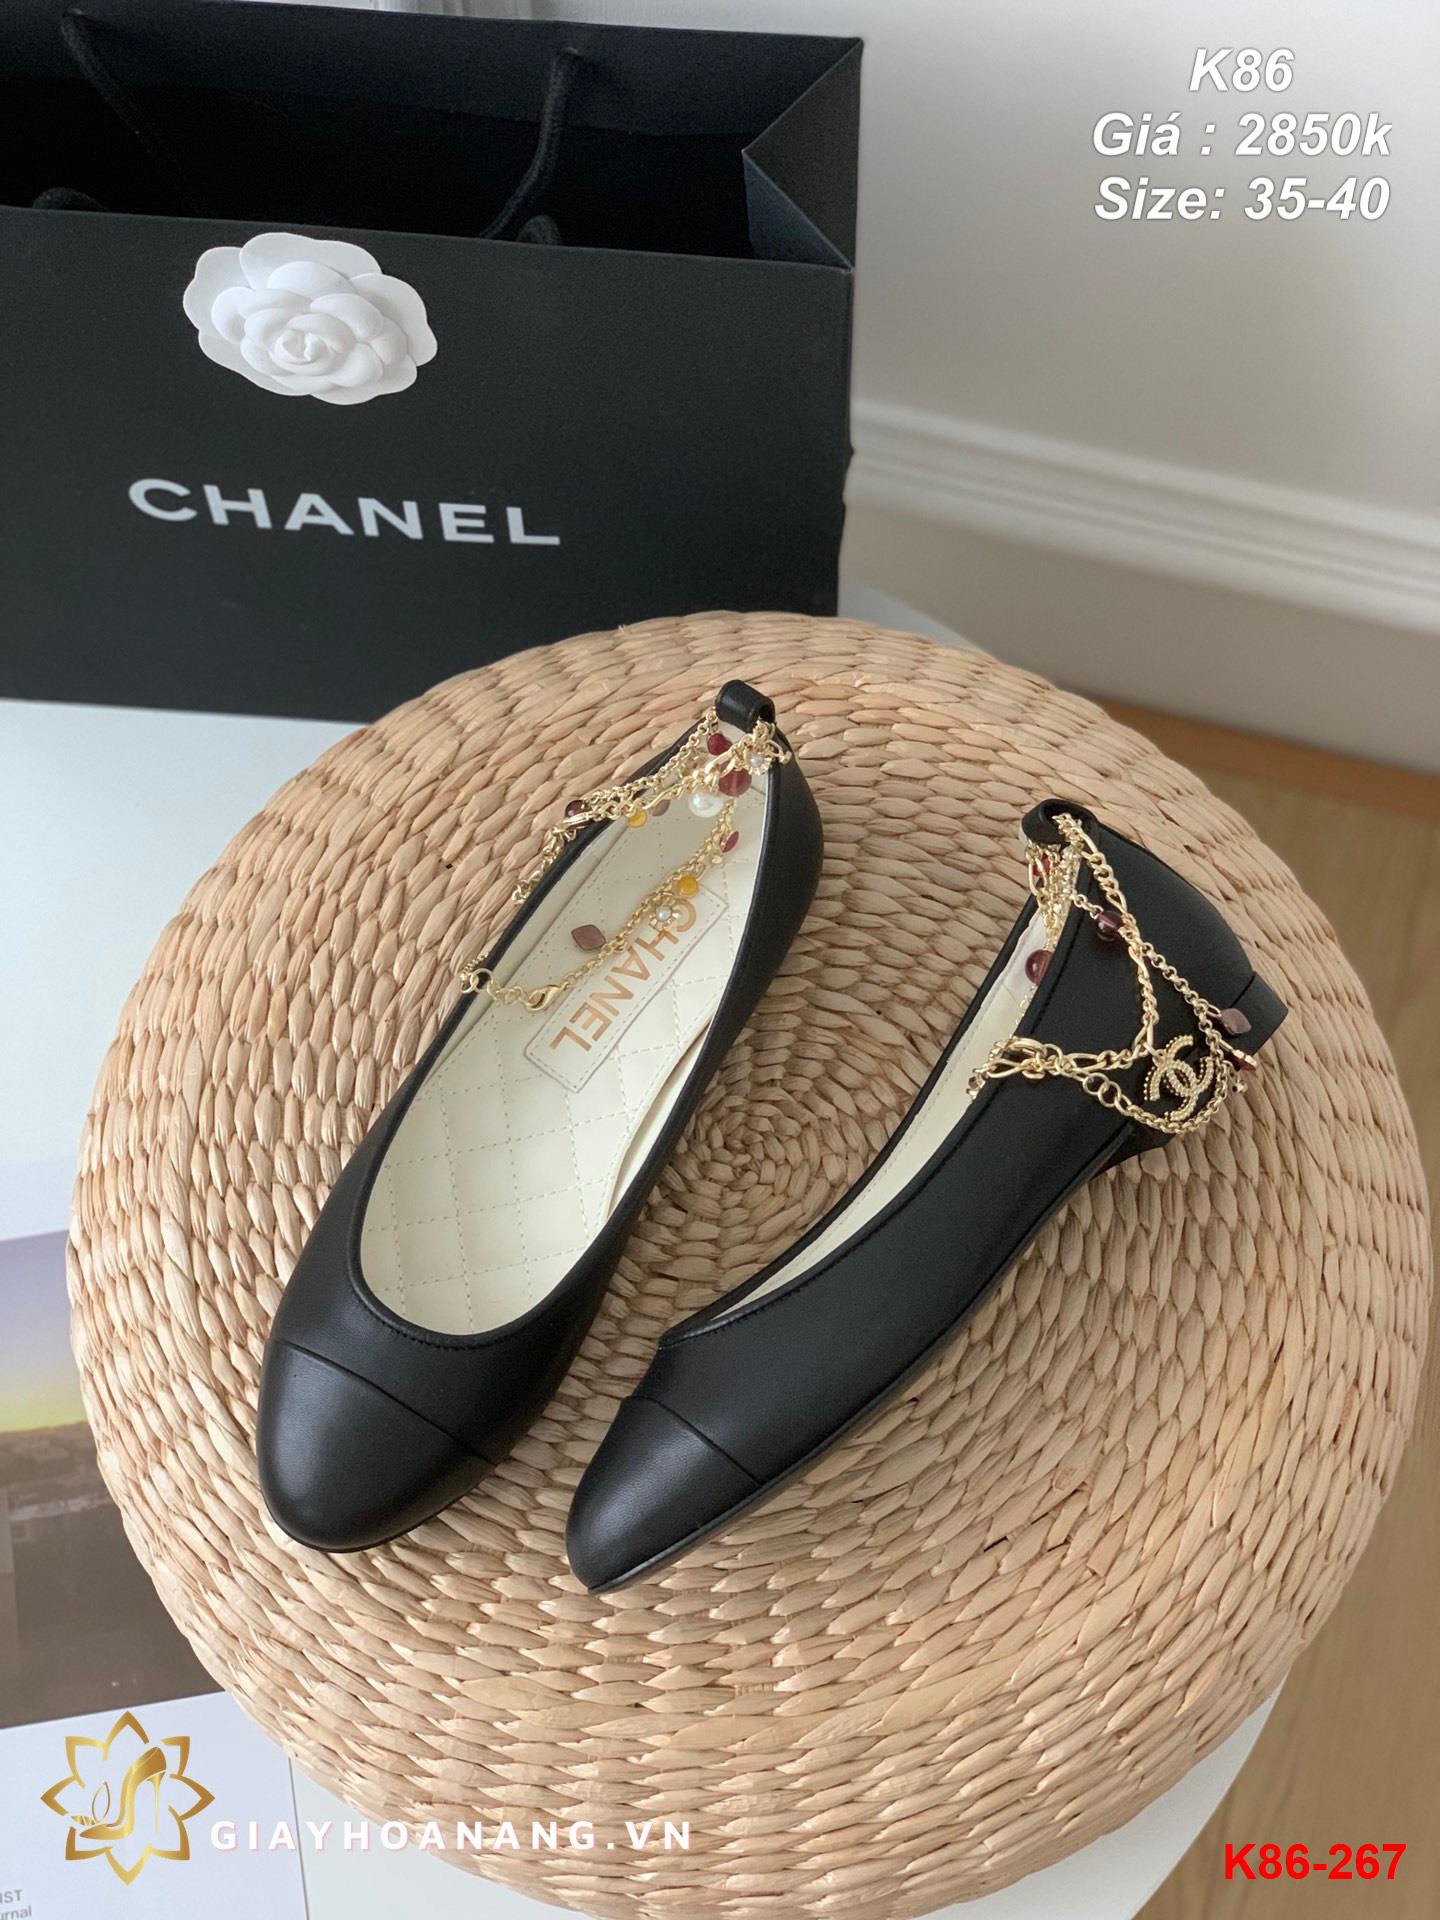 K86-267 Chanel giày bệt siêu cấp